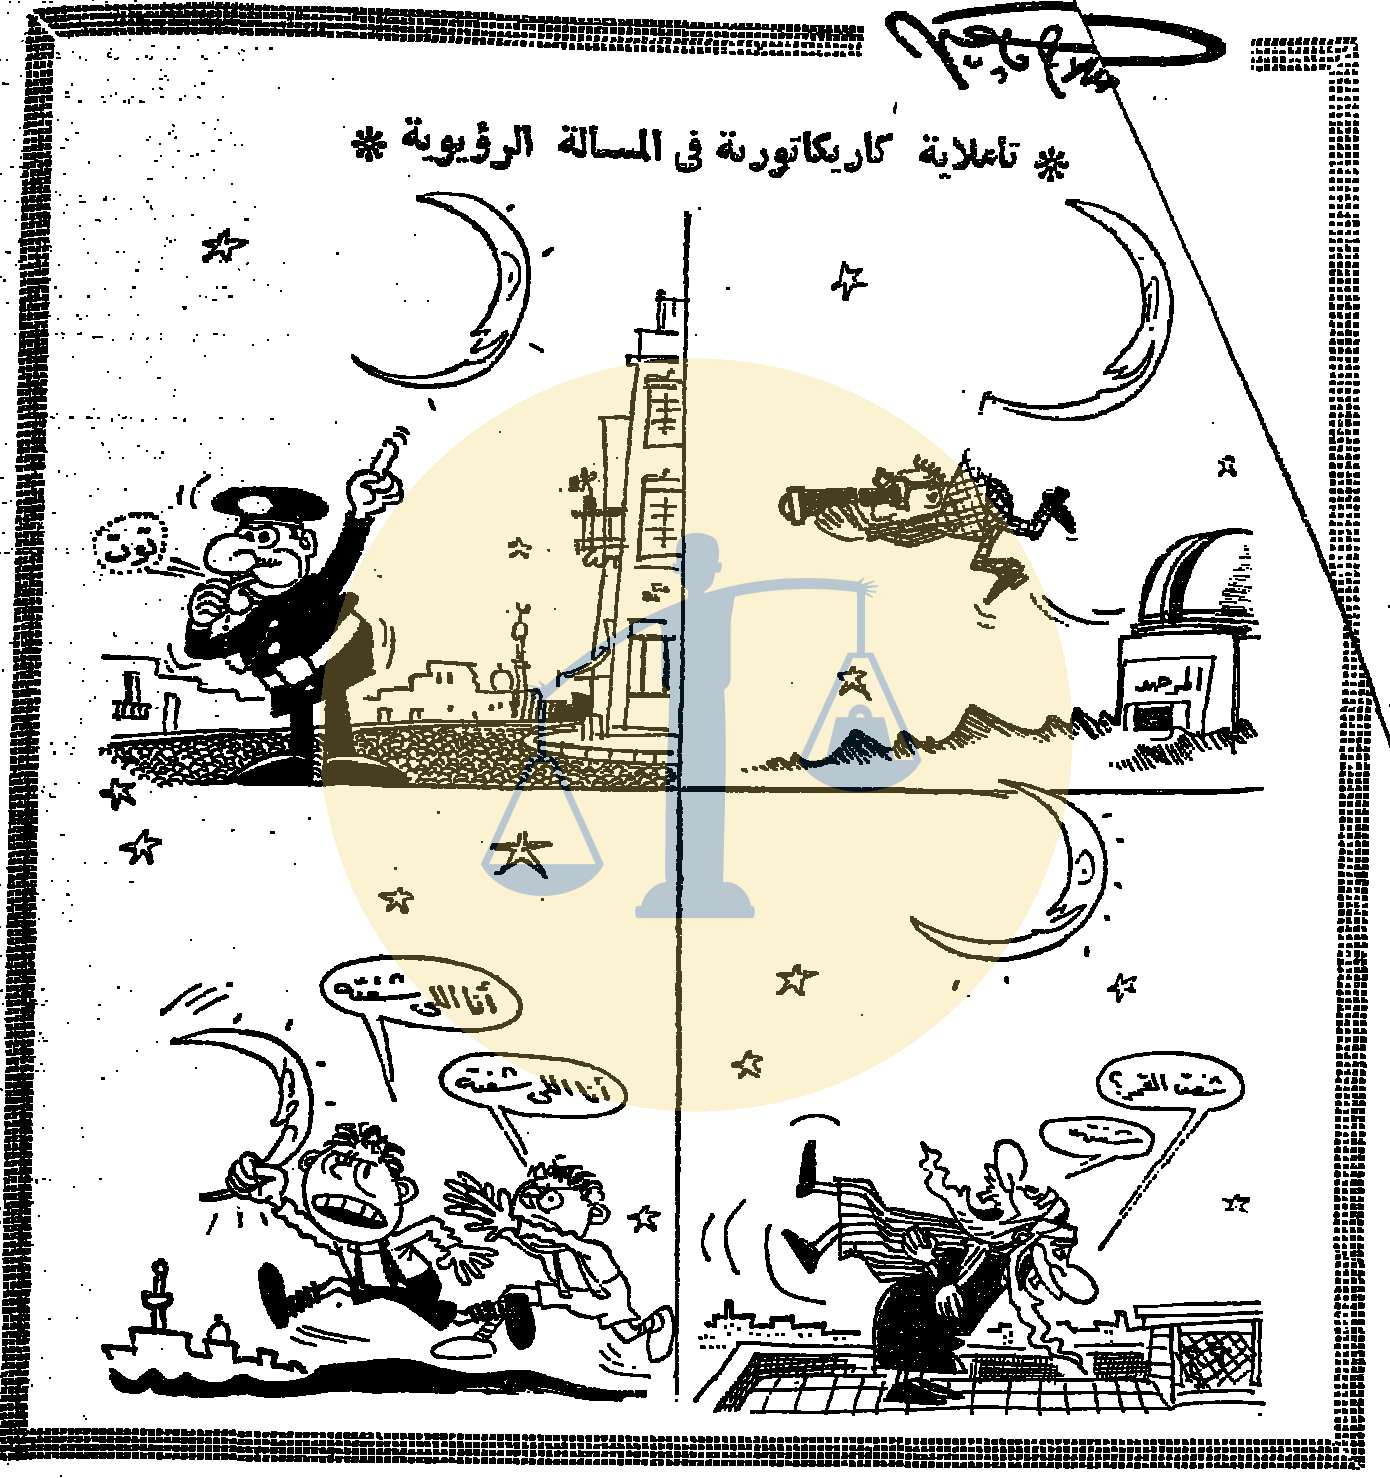 كاريكاتير صلاح جاهين يوم 2 رمضان 1385 الموافق 24 ديسمبر 1965 م